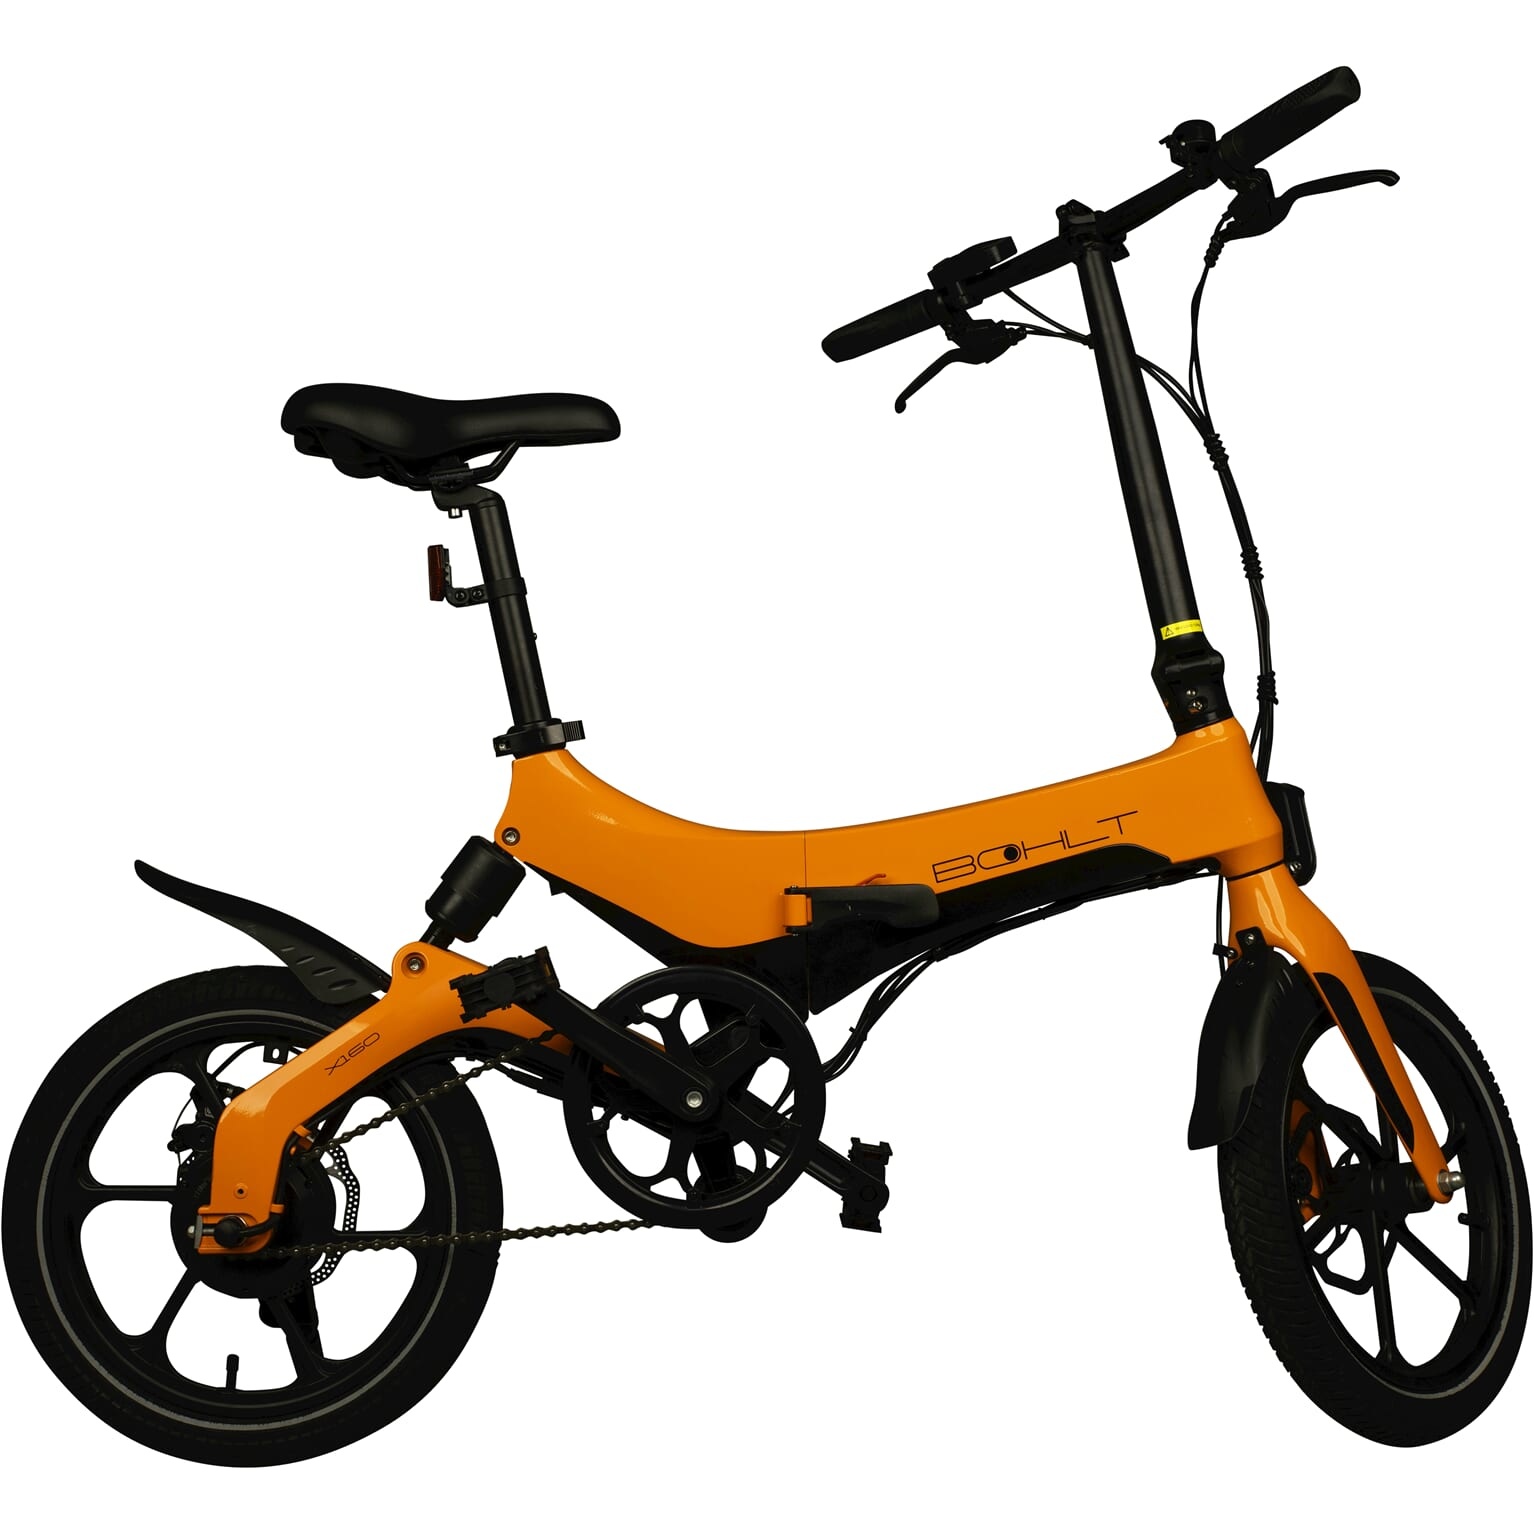 Permanent Aanzienlijk steno Bohlt X160 elektrische vouwfiets 16 inch Oranje kopen? - Premiumbikes